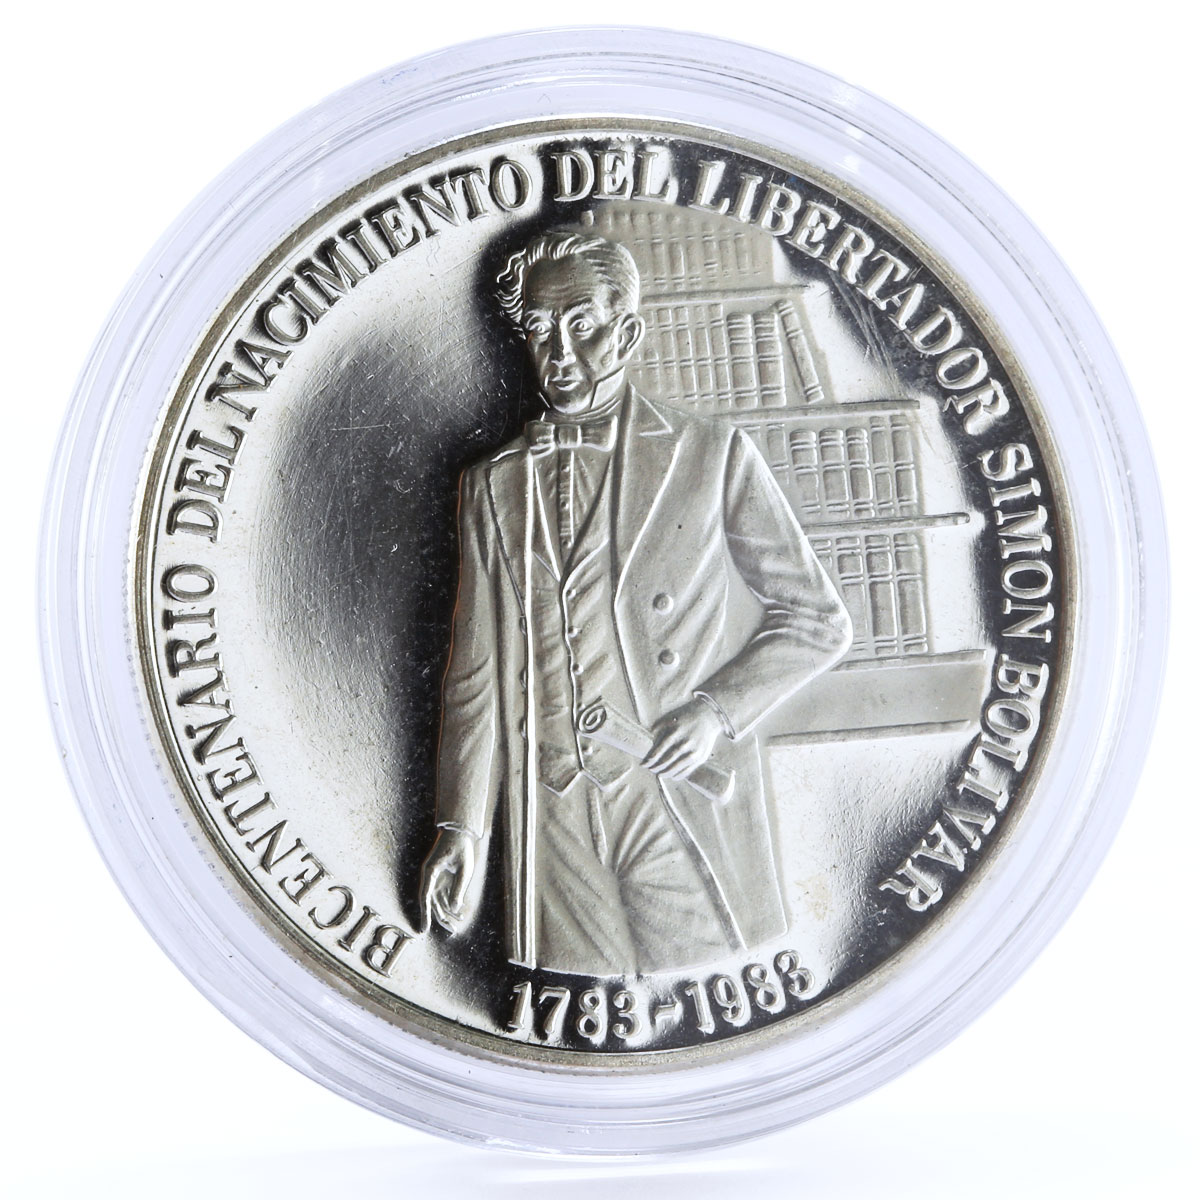 Venezuela 100 bolivares Bicentenary of Liberator Simon Bolivar silver coin 1983